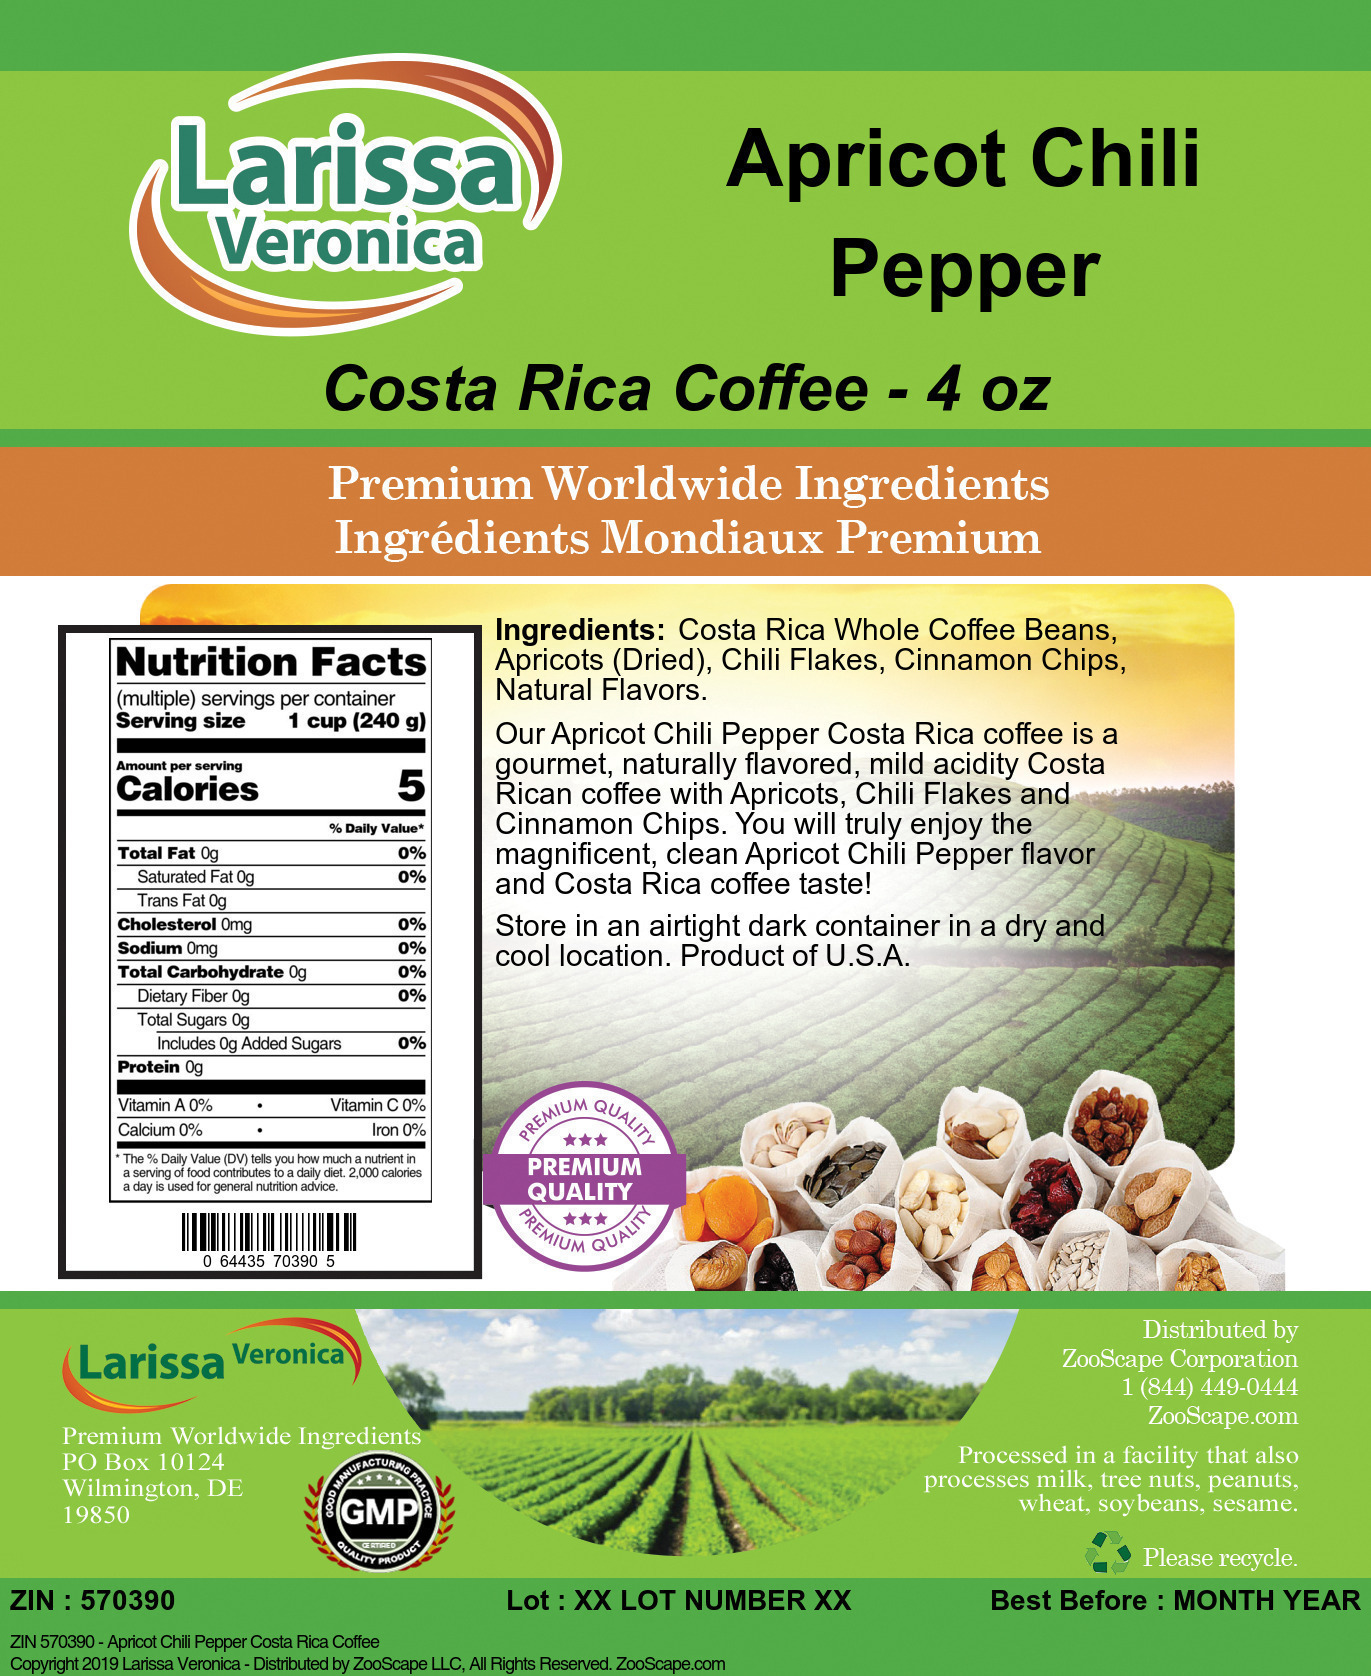 Apricot Chili Pepper Costa Rica Coffee - Label